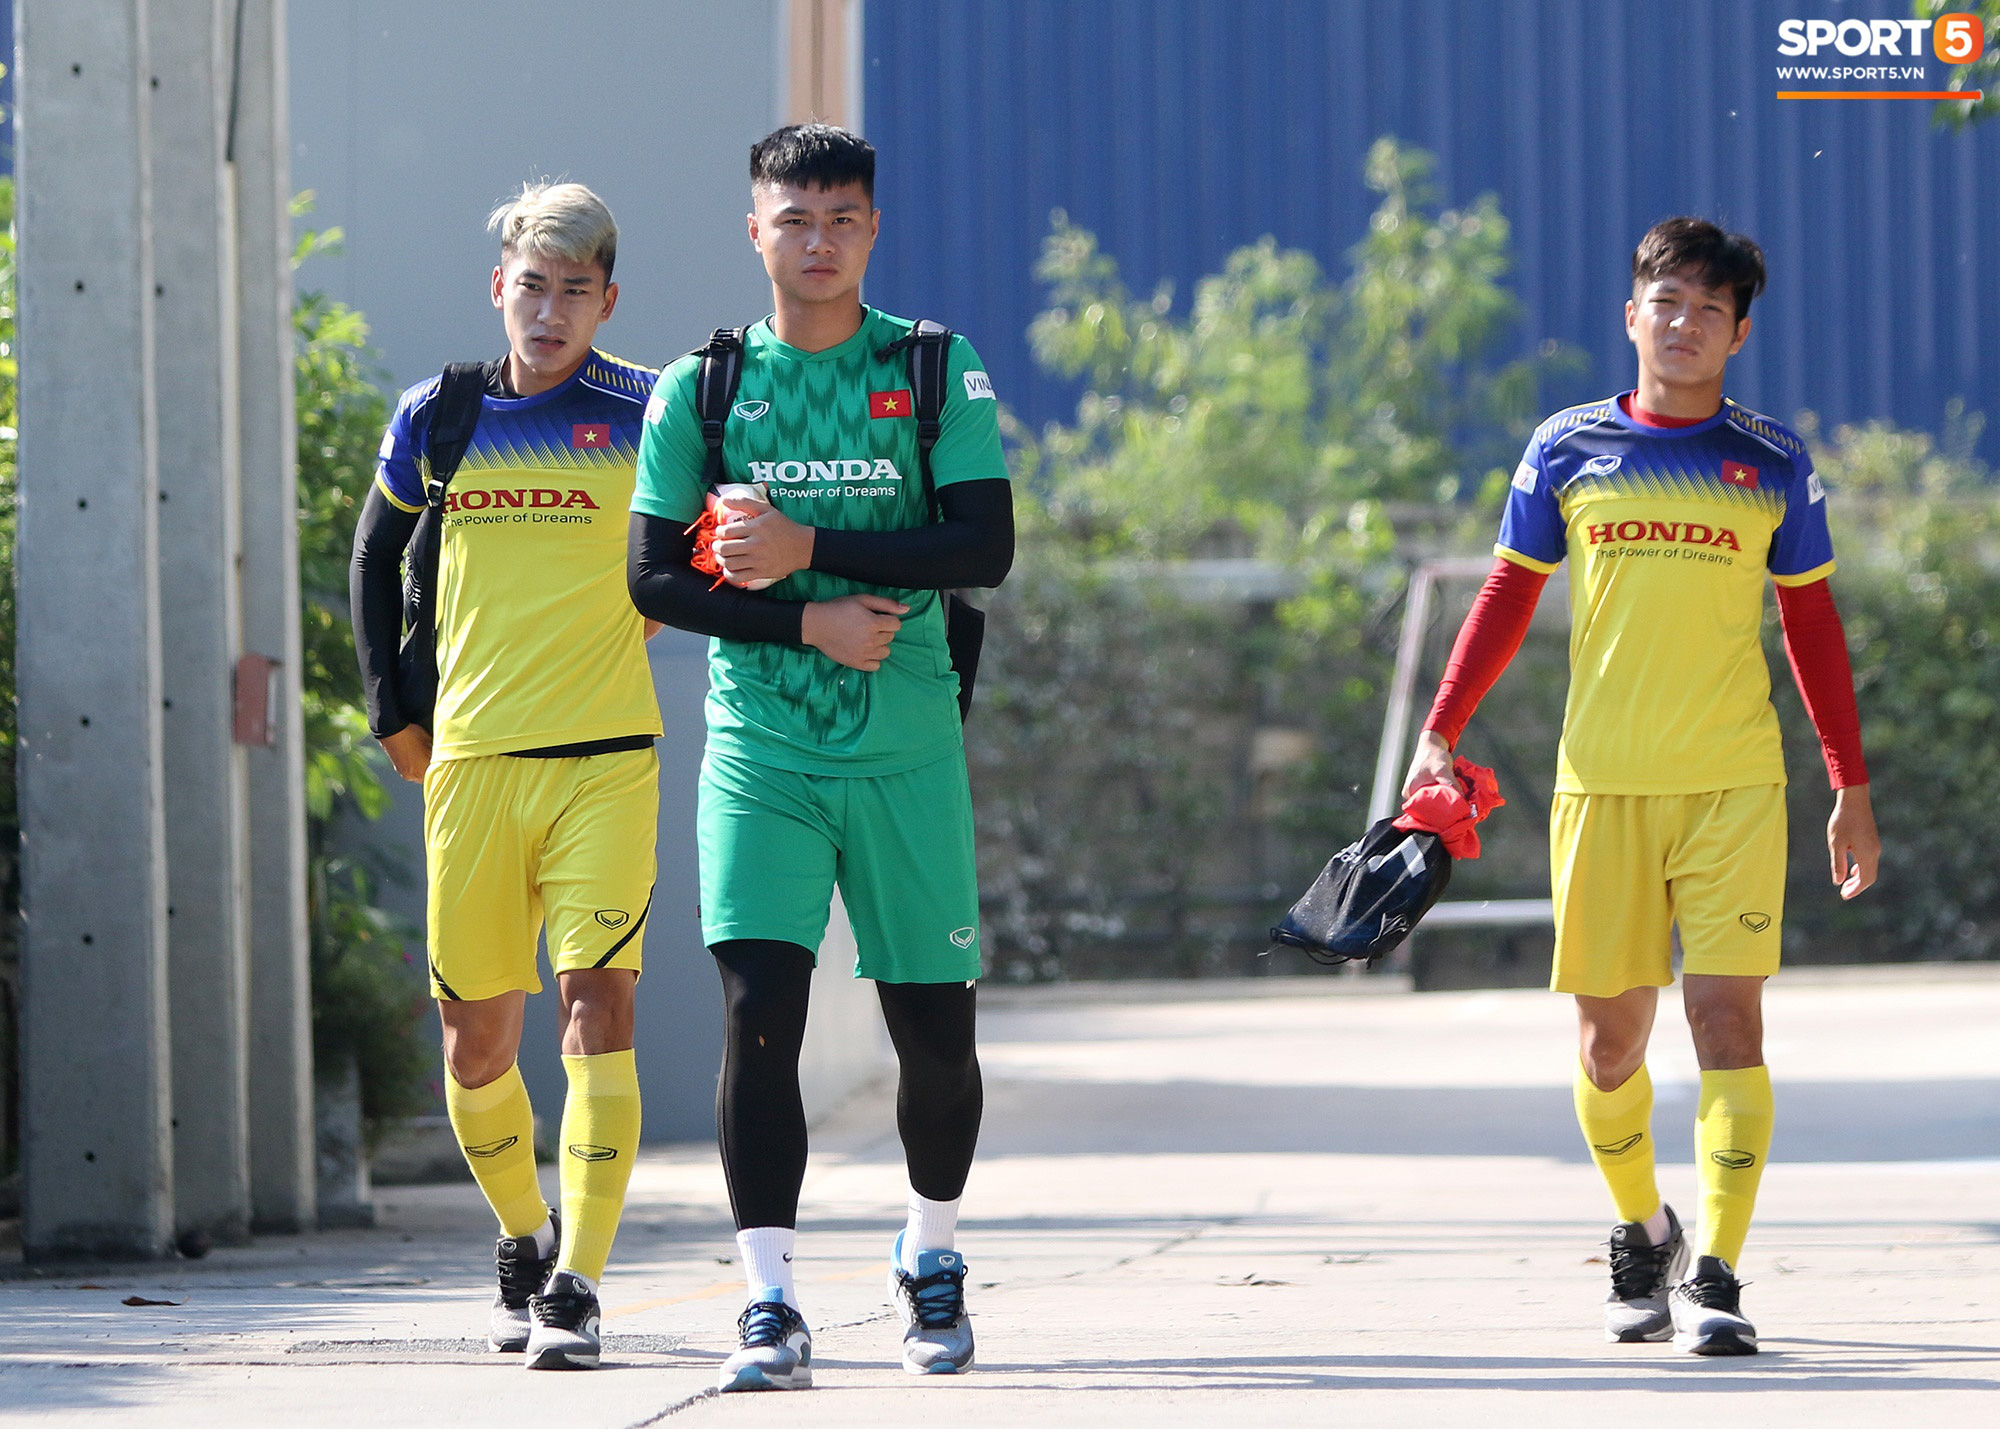 Thủ môn Bùi Tiến Dũng cười tươi rói sau hiệp đấu giữ sạch lưới cho U23 Việt Nam - Ảnh 4.